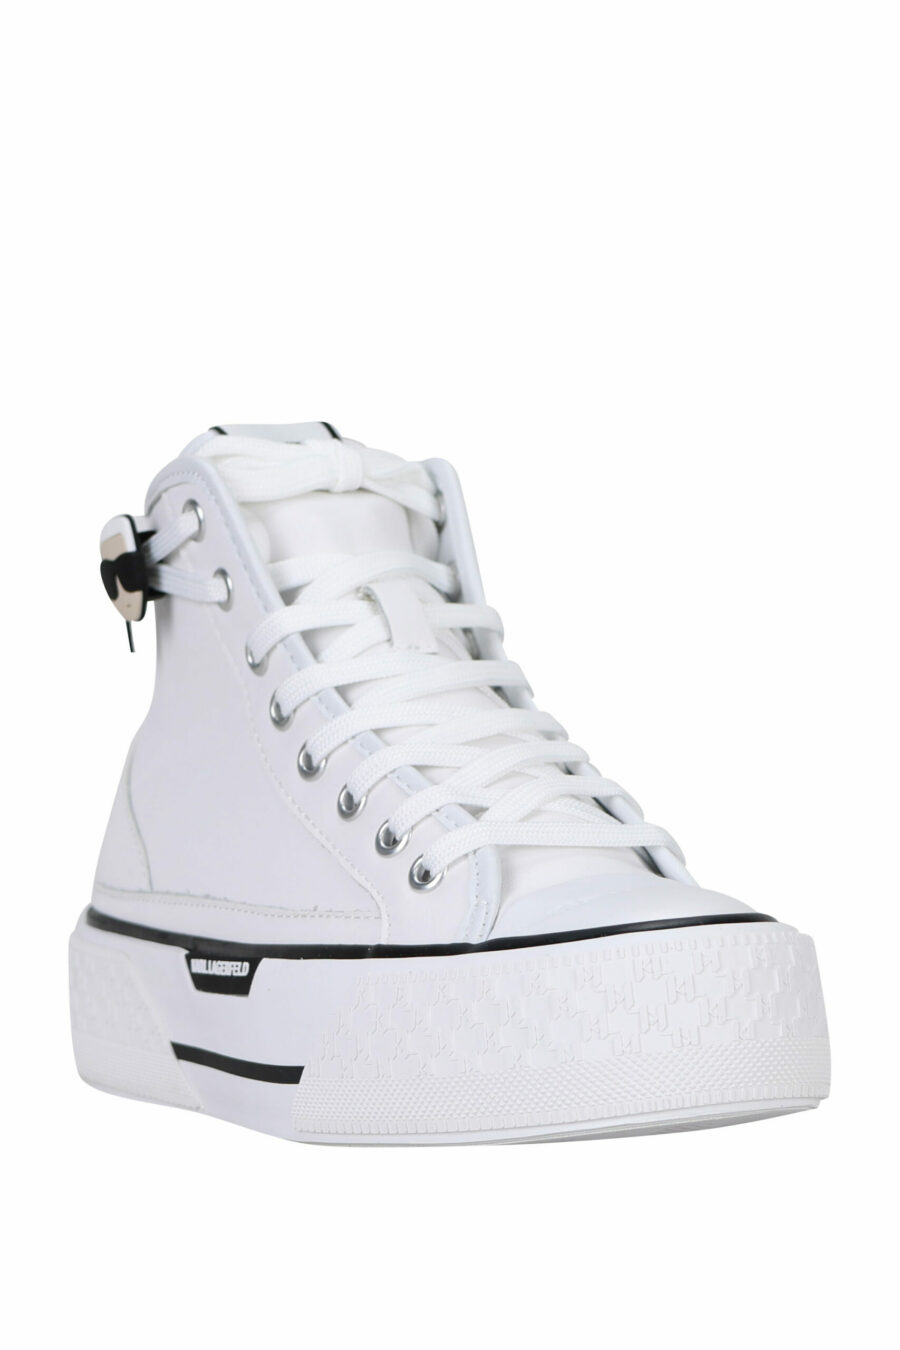 Zapatillas blancas altas de cuero con suela blanca y logo "karl" - 5059529322974 1 scaled